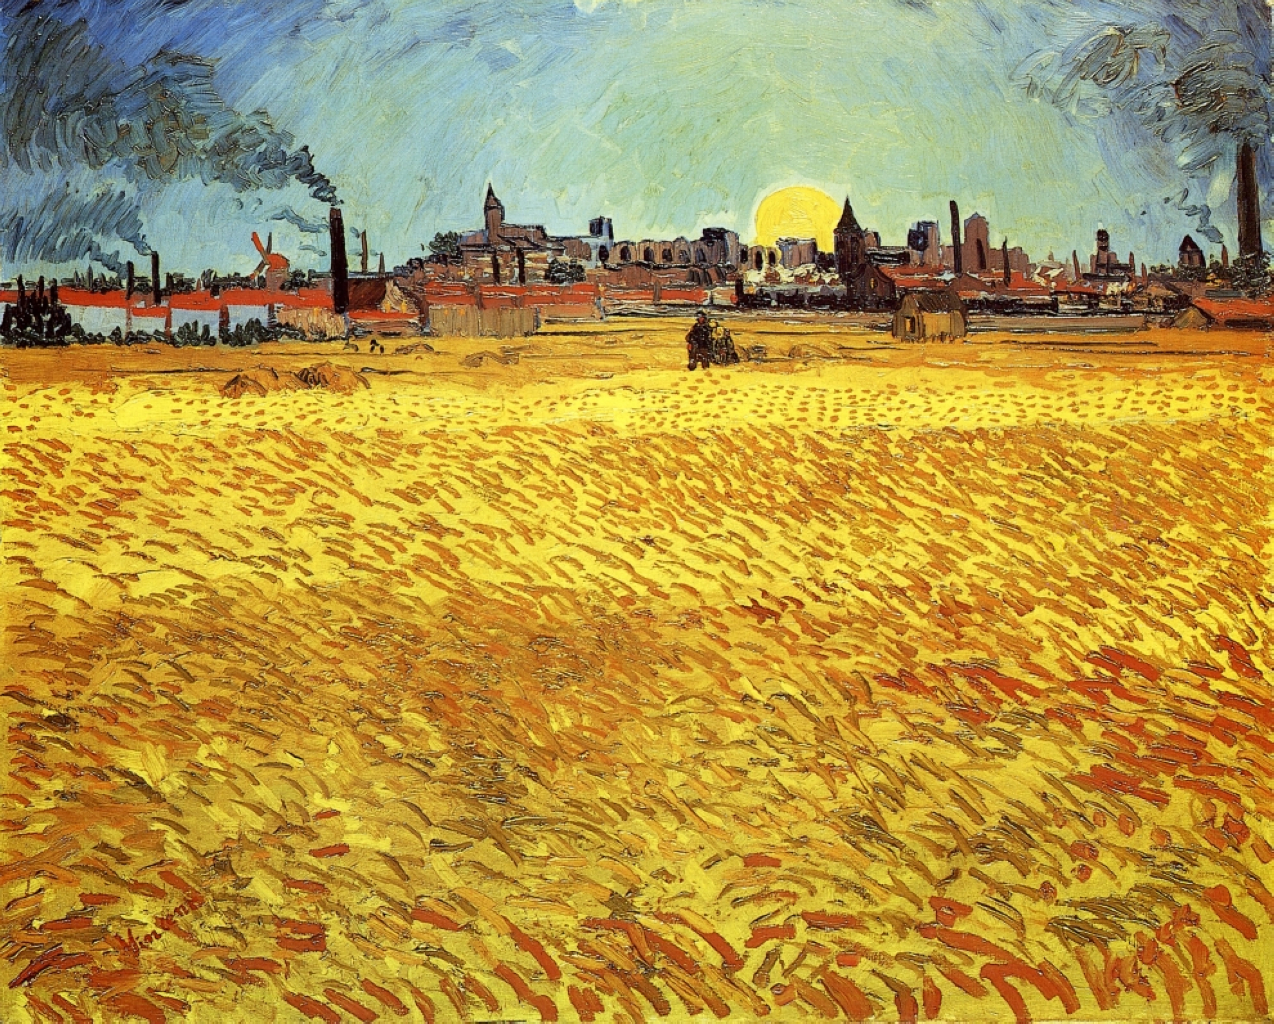 Летний вечер, пшеничное поле на закате by Винсе́нт Виллем Ван Гог - 1888 - 188 x 231 cm 